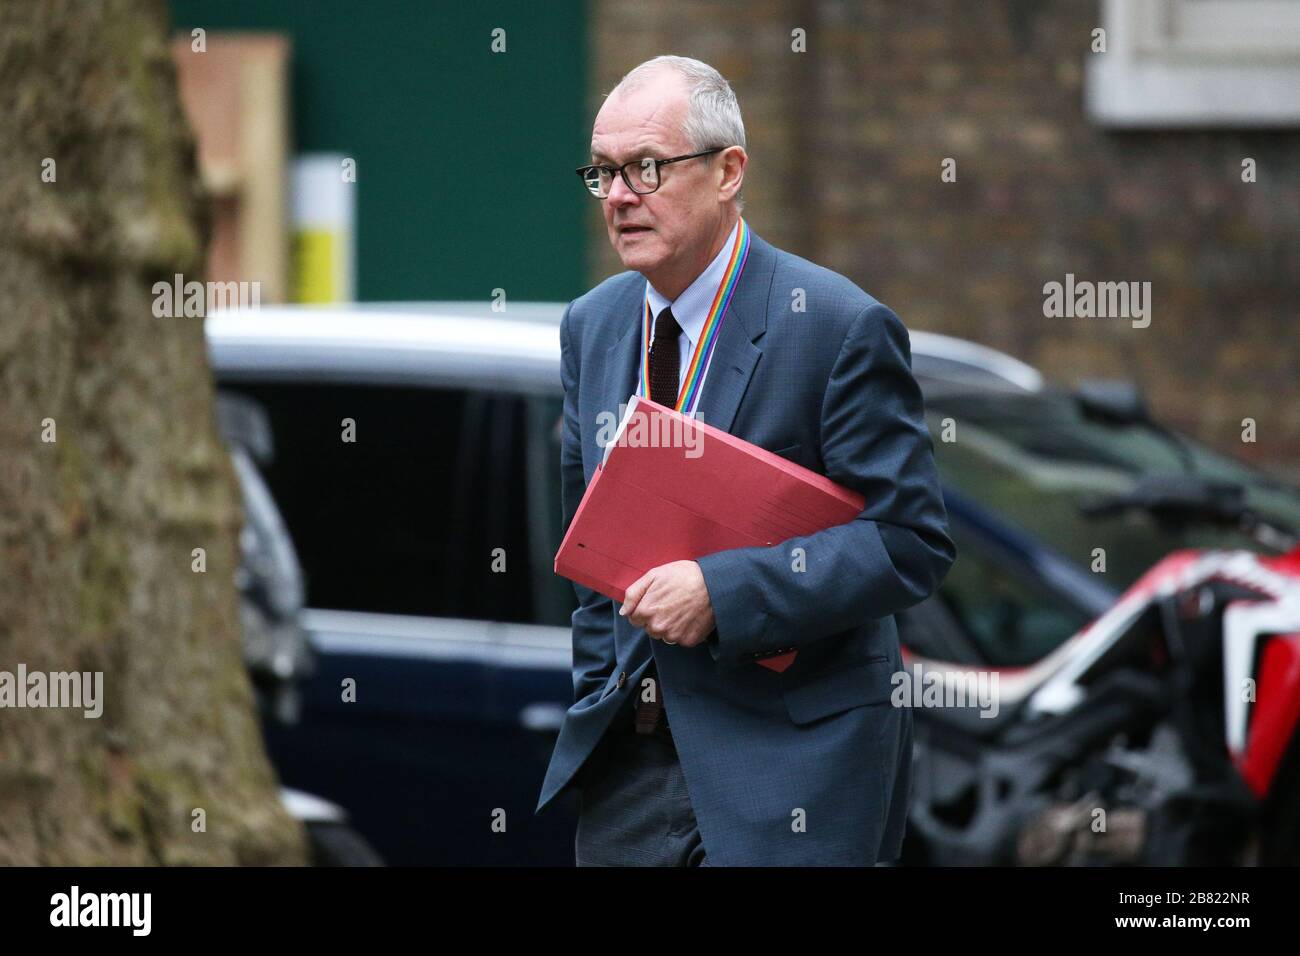 Le conseiller scientifique en chef Sir Patrick Vallance, dans Downing Street, à Londres, étant donné que le gouvernement devrait publier un projet de loi sur les pouvoirs de coronavirus d'urgence. Banque D'Images